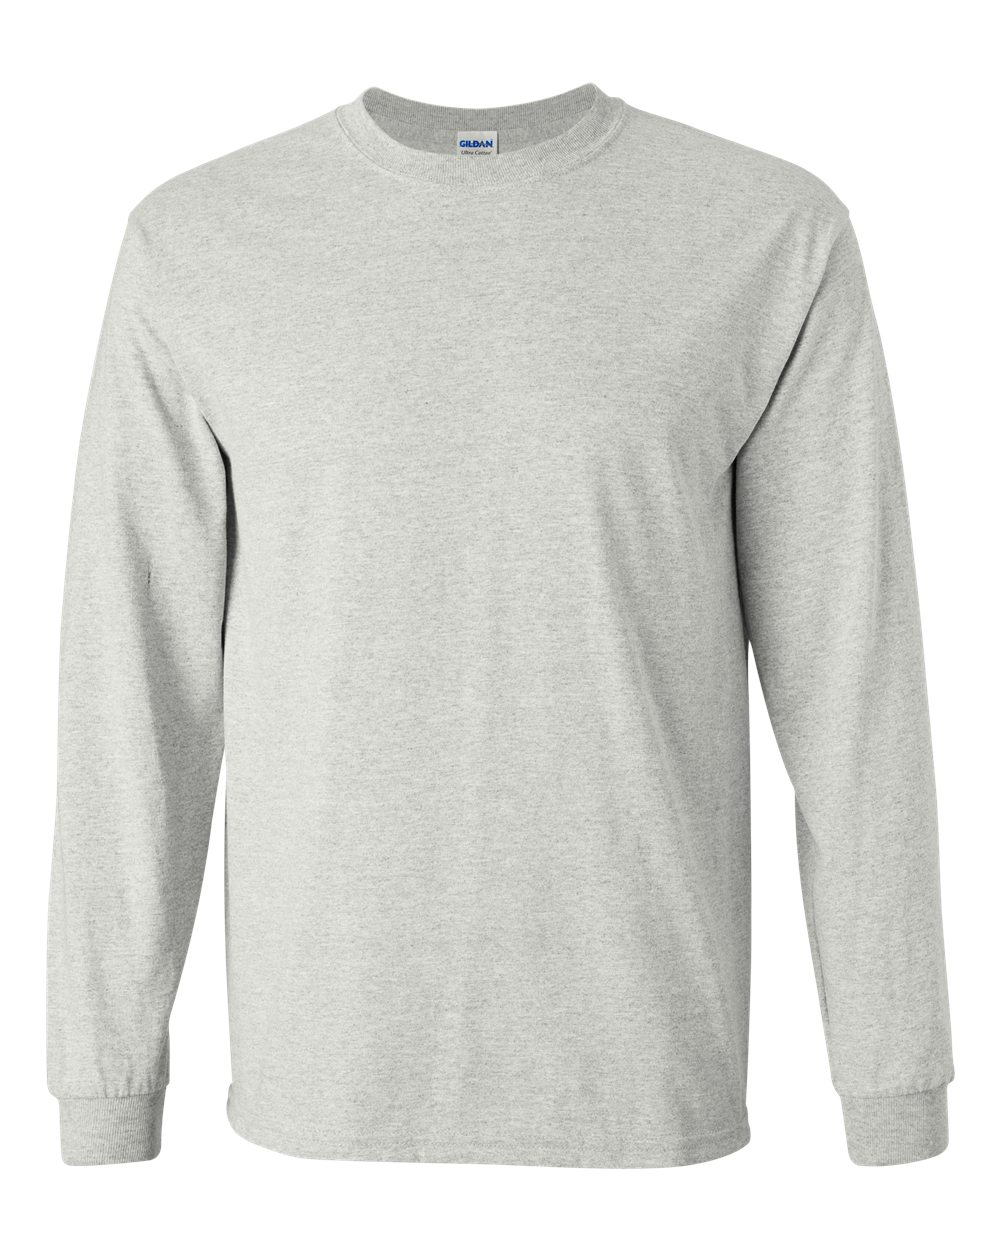 Gildan G2400 - Adult Ultra Cotton Long-Sleeve T-Shirt